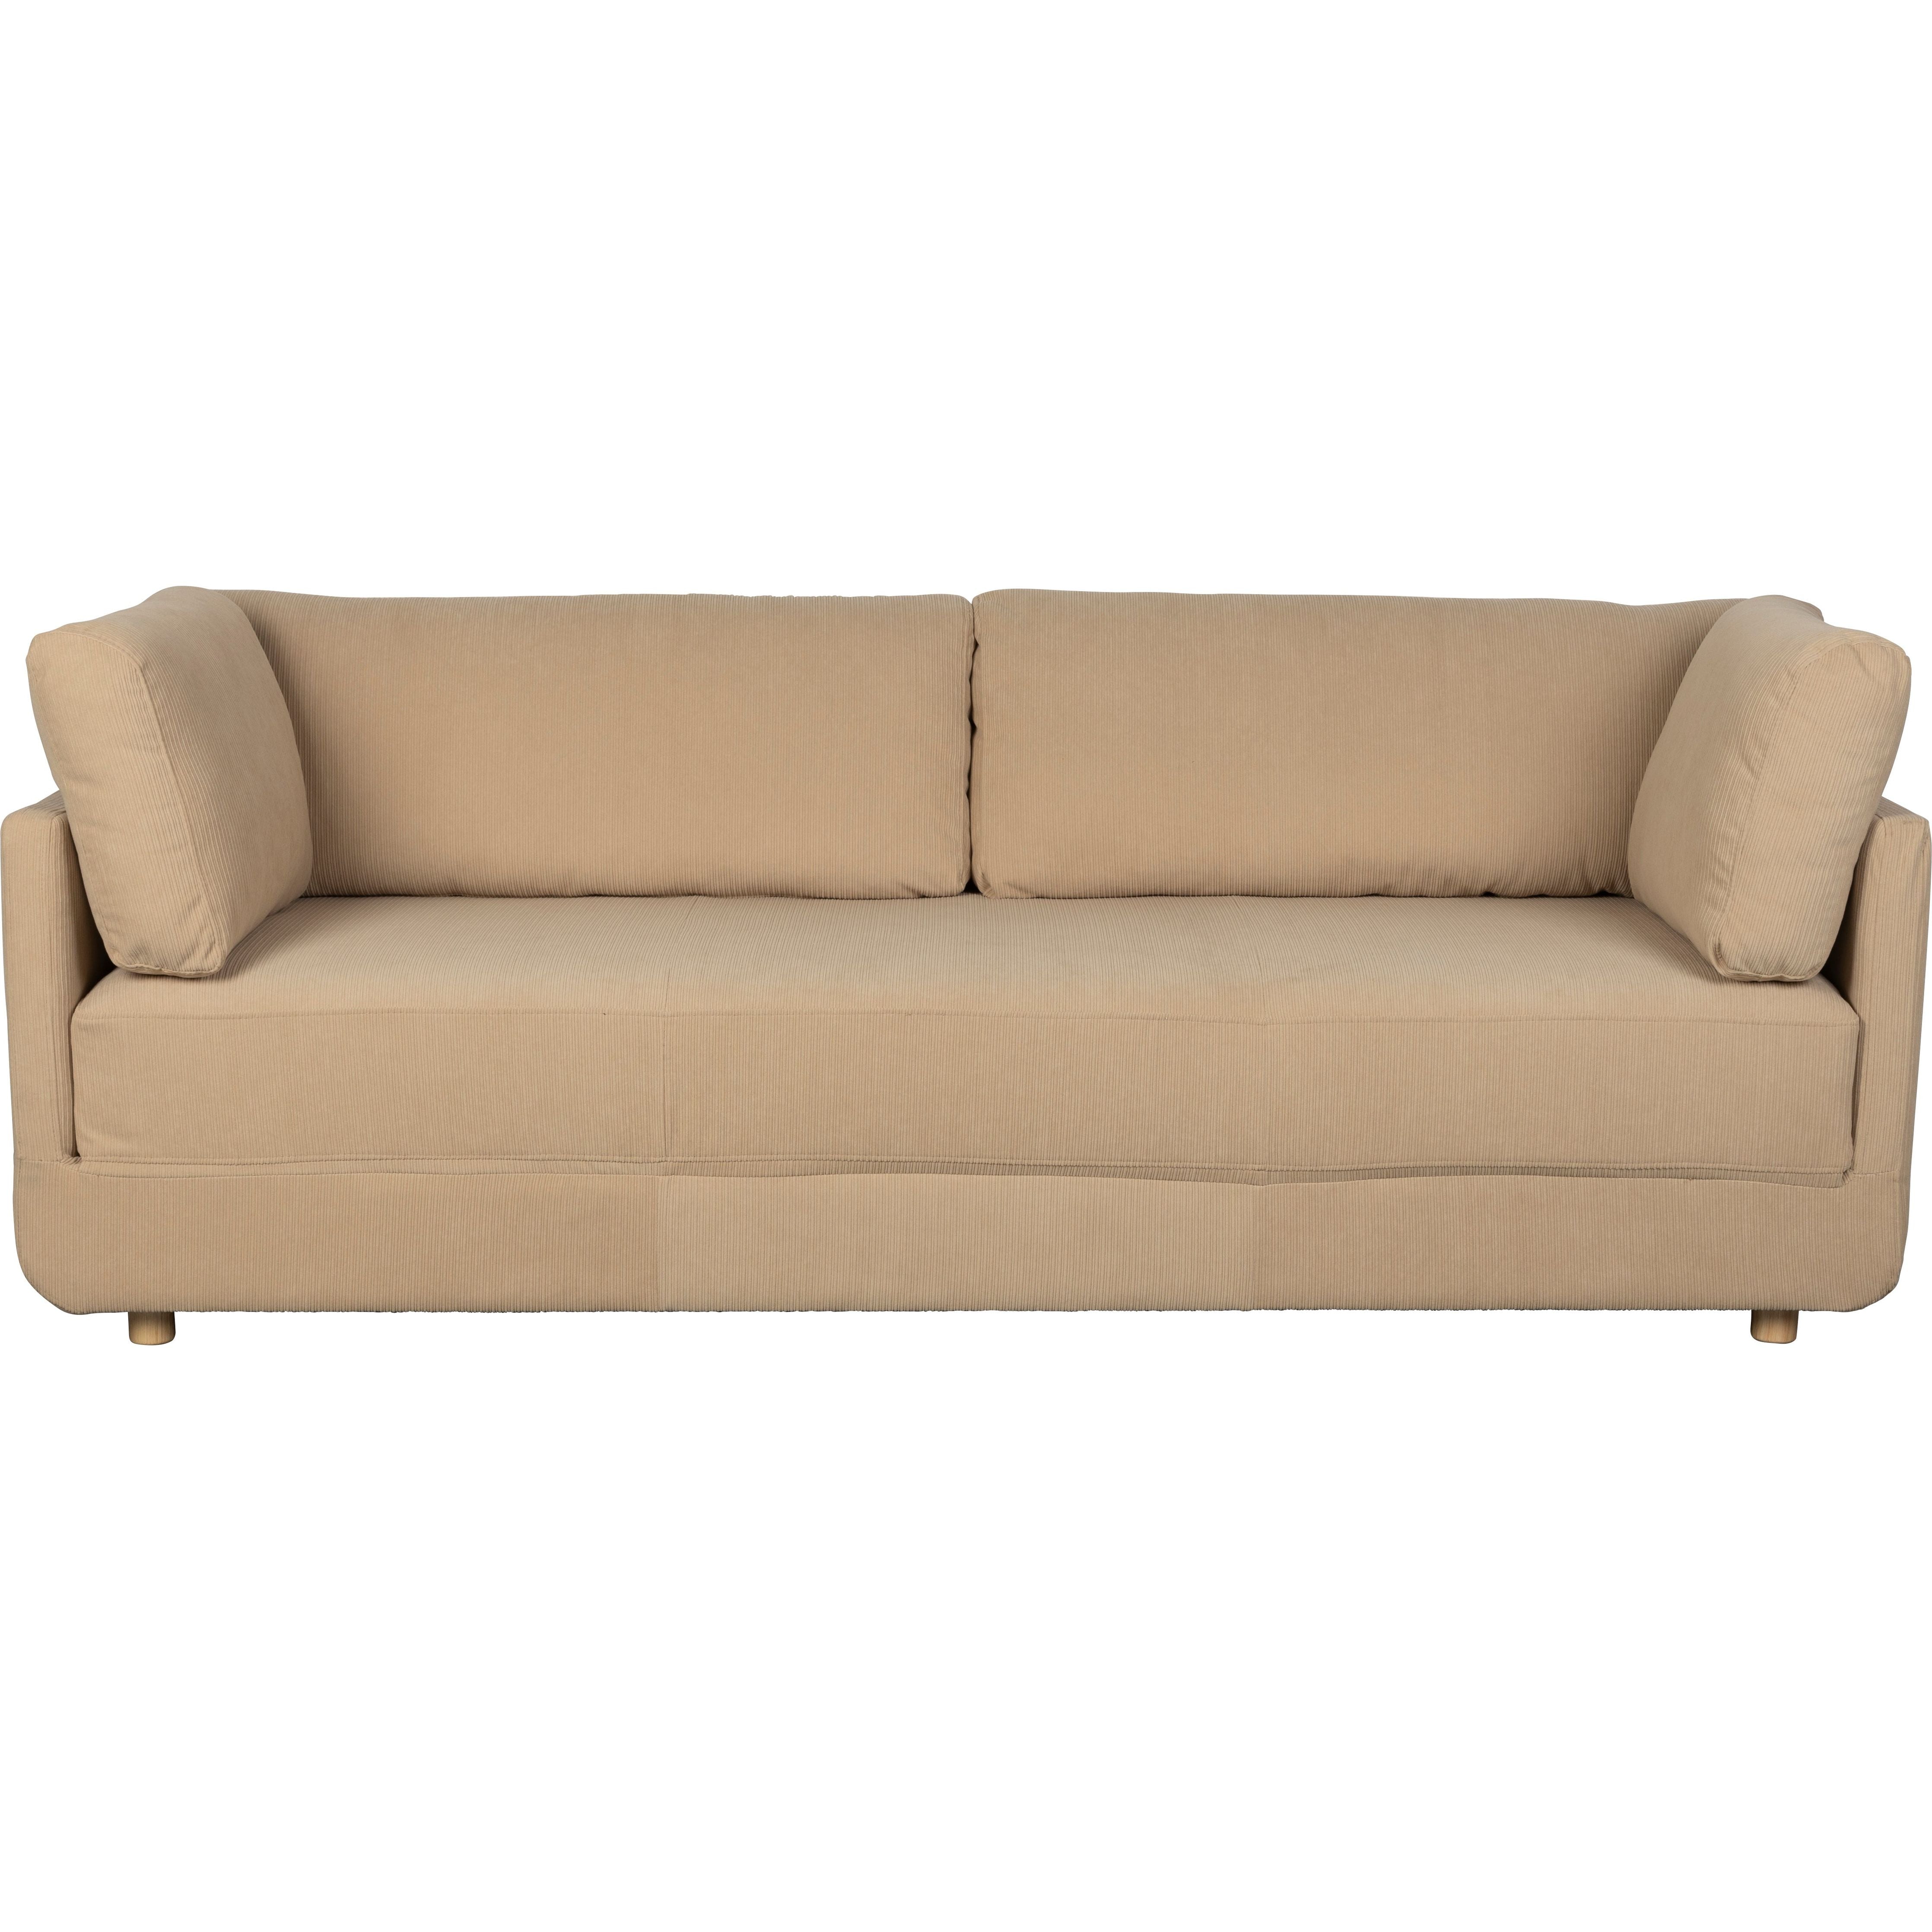 Sofa bed norah beige